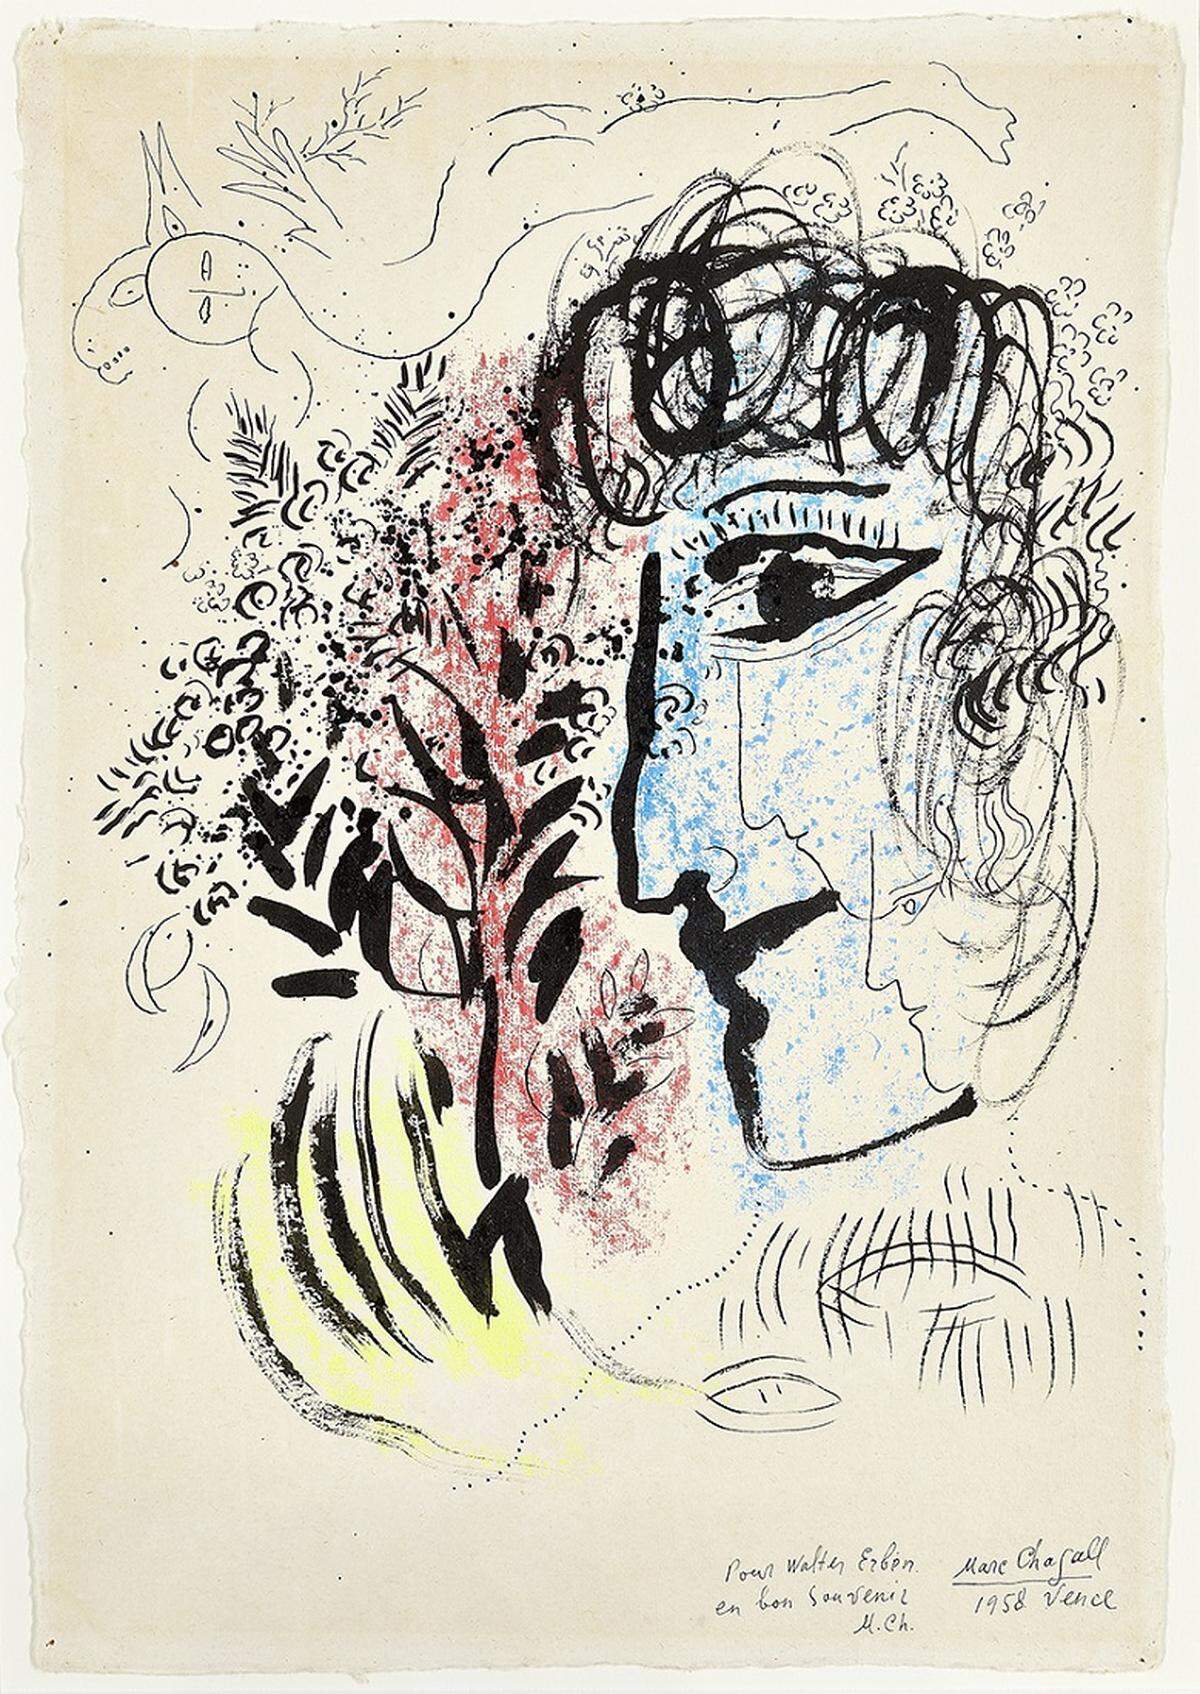 Marc Chagall, „Selbstportrait“, 1958,  Tusche und Farbkreide auf Papier, 42,5 x 29 cm, signiert: Marc Chagall, 1958 Vence